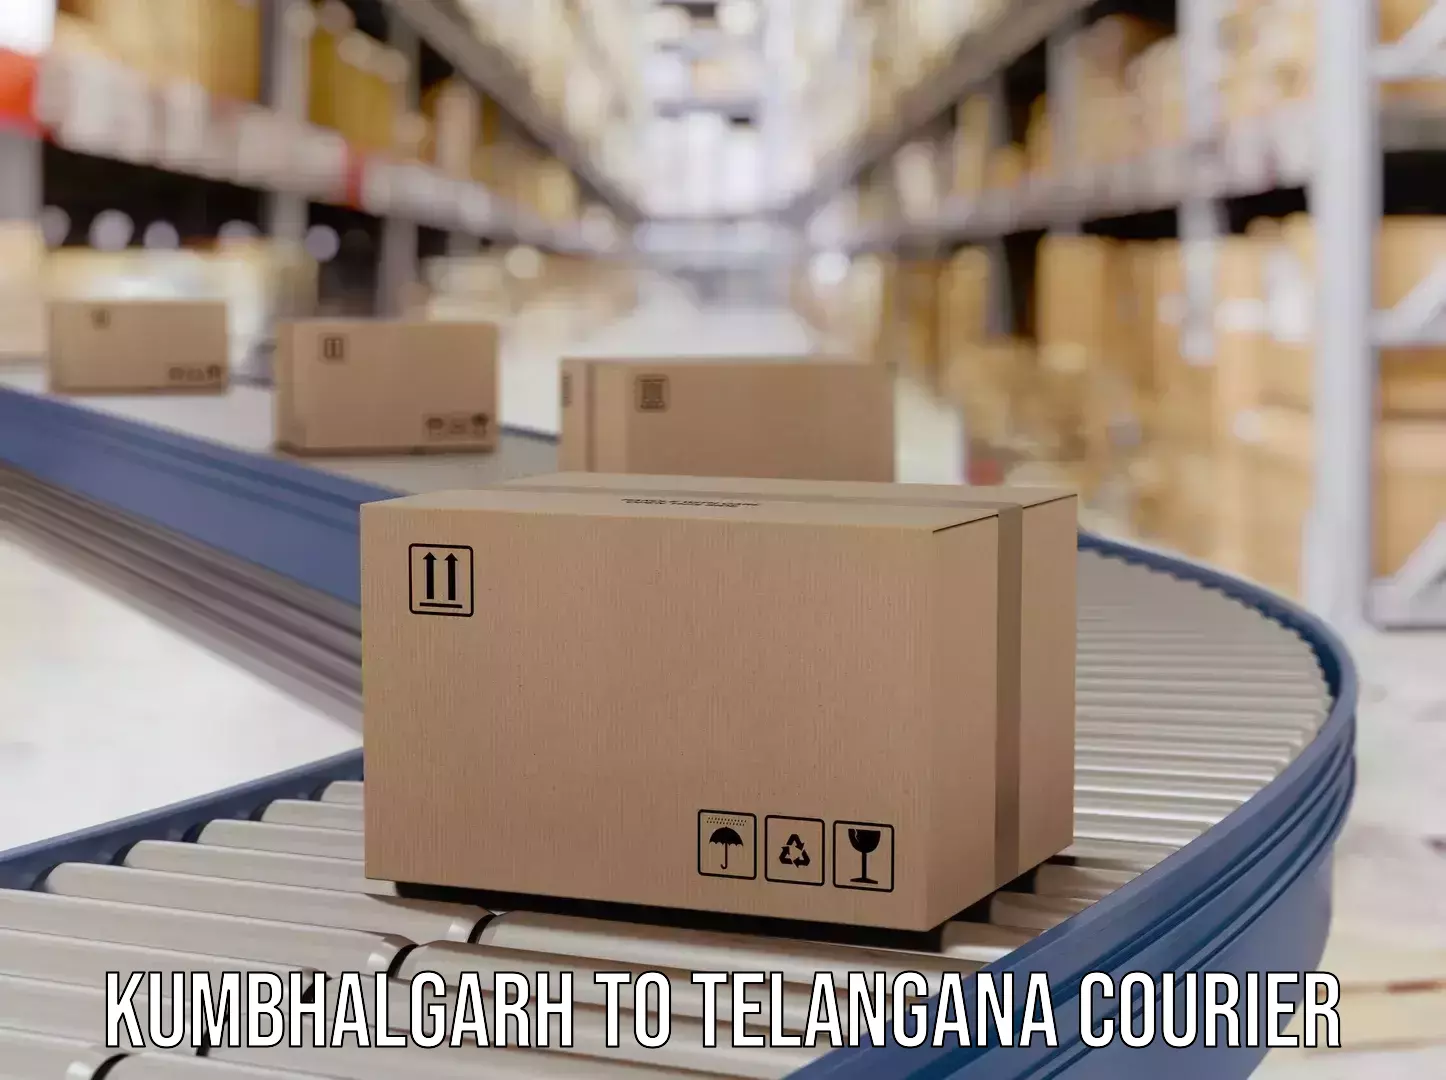 State-of-the-art courier technology Kumbhalgarh to Bhuvanagiri